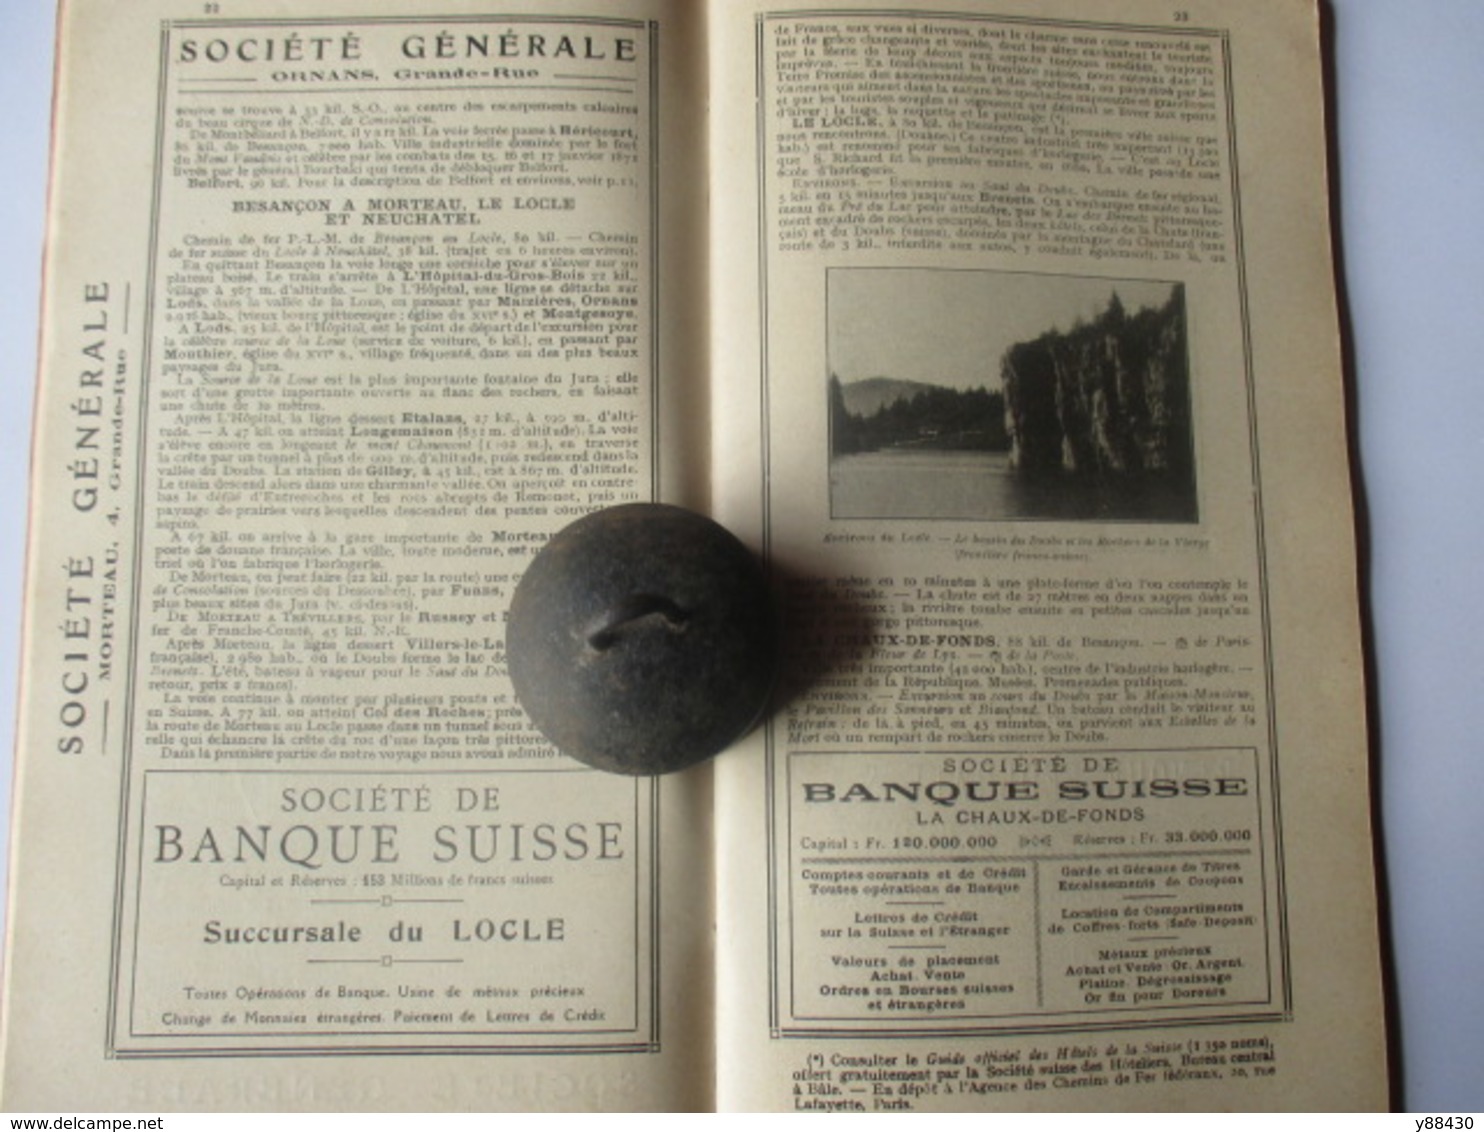 Livret Guides du Touriste THIOLIER de 1923 - FRANCHE COMTE / JURA / SUISSE - 100 pages - 22 photos